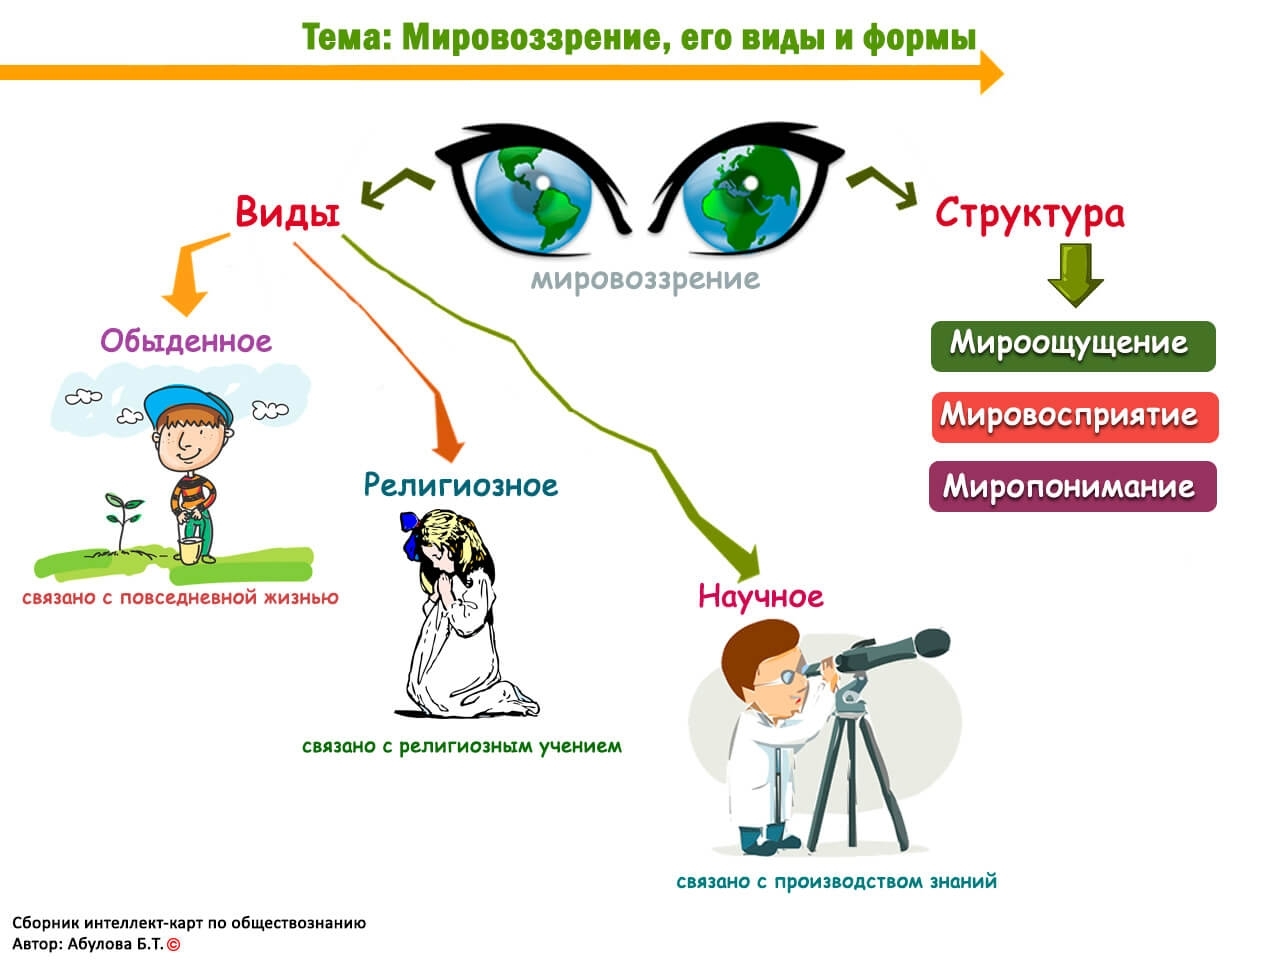 Мировоззрение современного человека: «Что определяет мировоззрение современного человека?» – Яндекс.Кью – «Что определяет мировоззрение современного человека?» – Яндекс.Знатоки